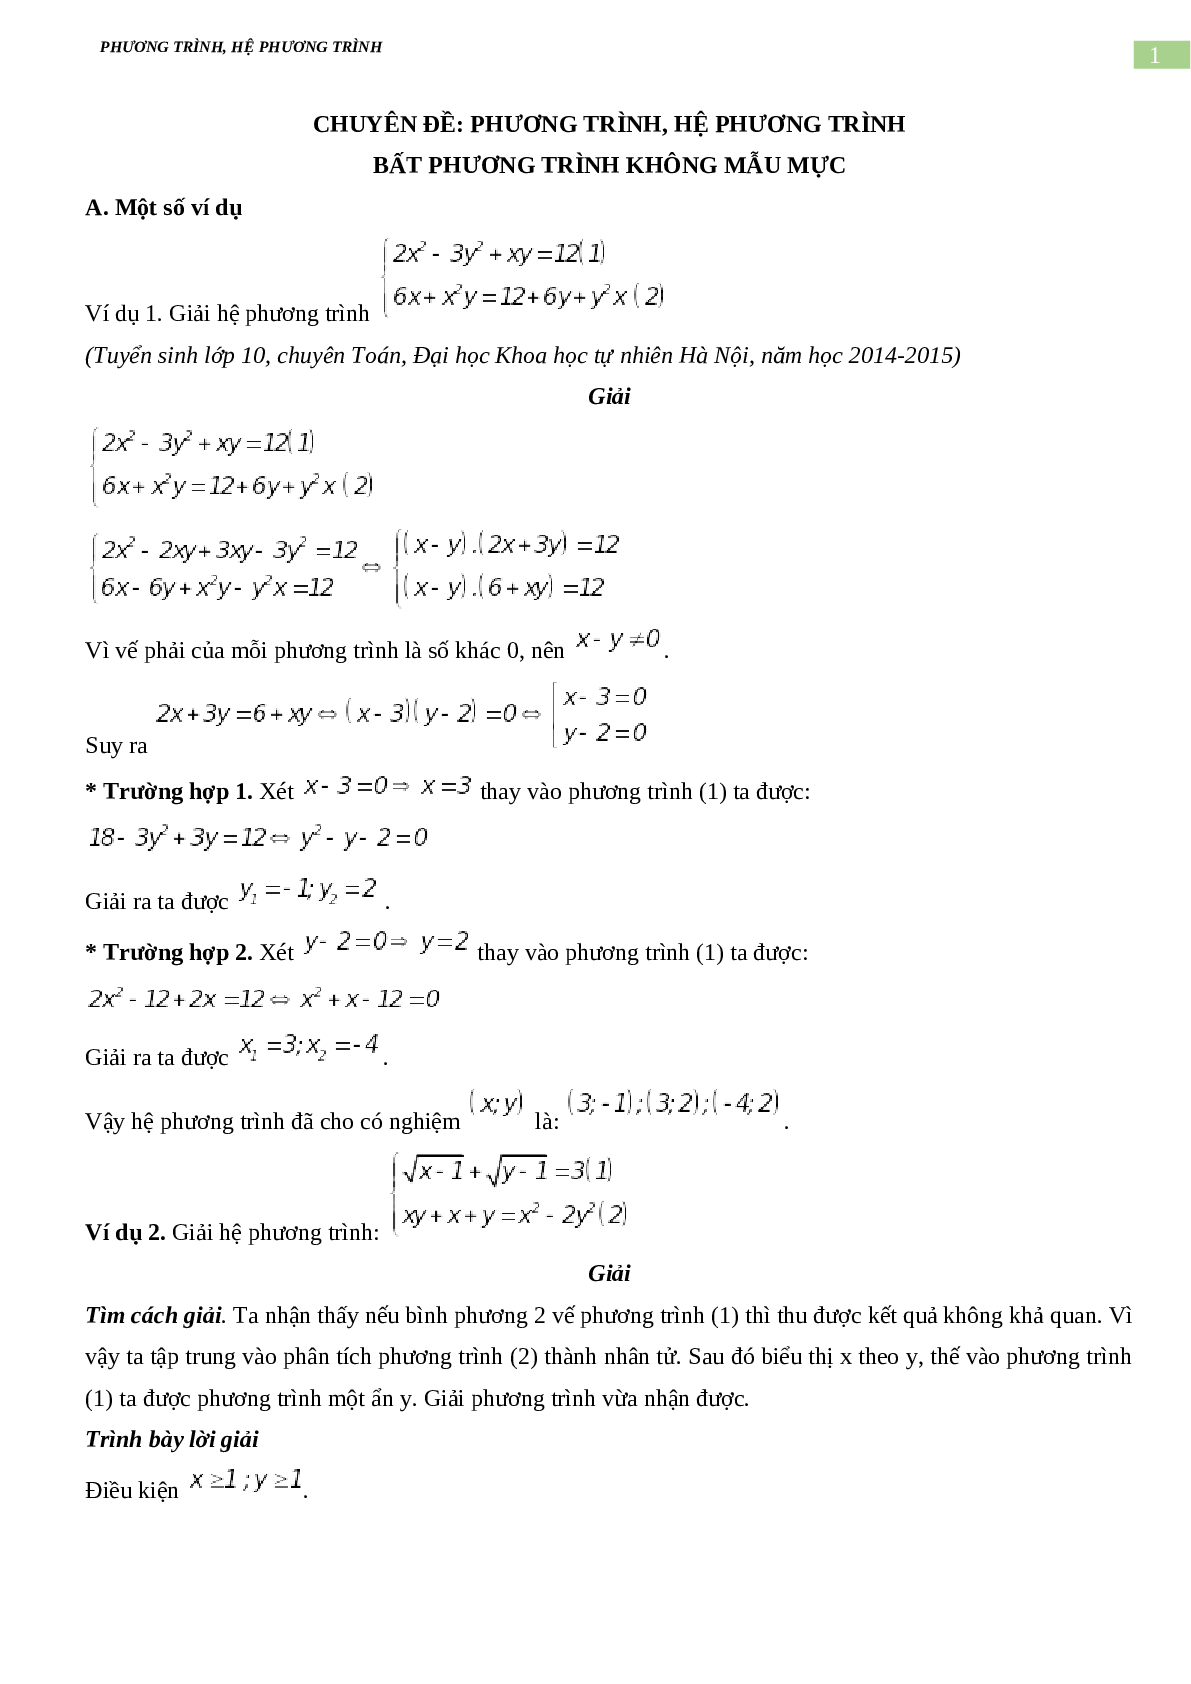 Bài tập về phương trình, hệ phương trình, bất phương trình không mẫu mực có đáp án, chọn lọc (trang 1)